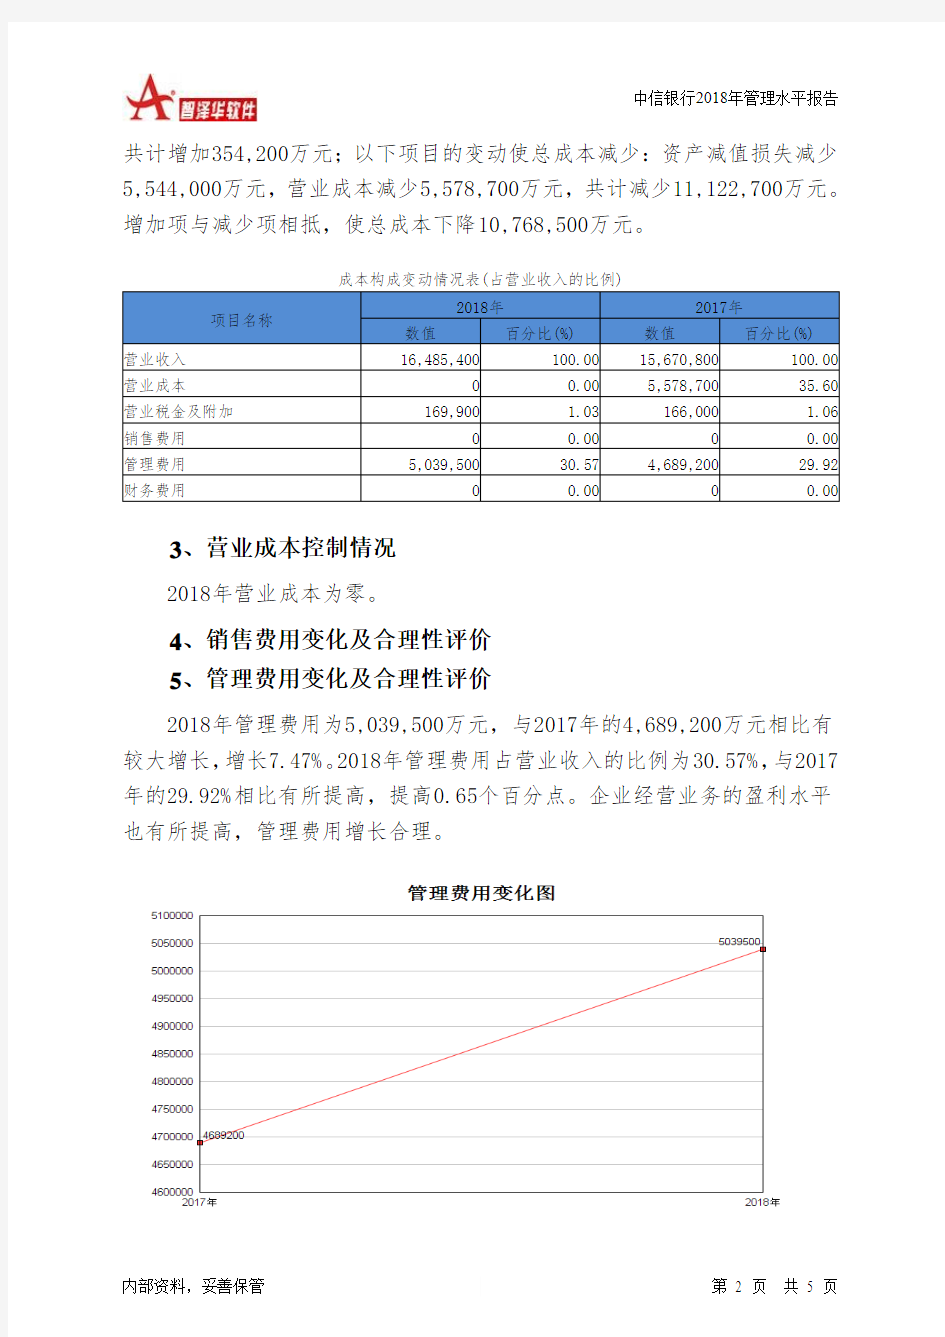 中信银行2018年管理水平报告-智泽华